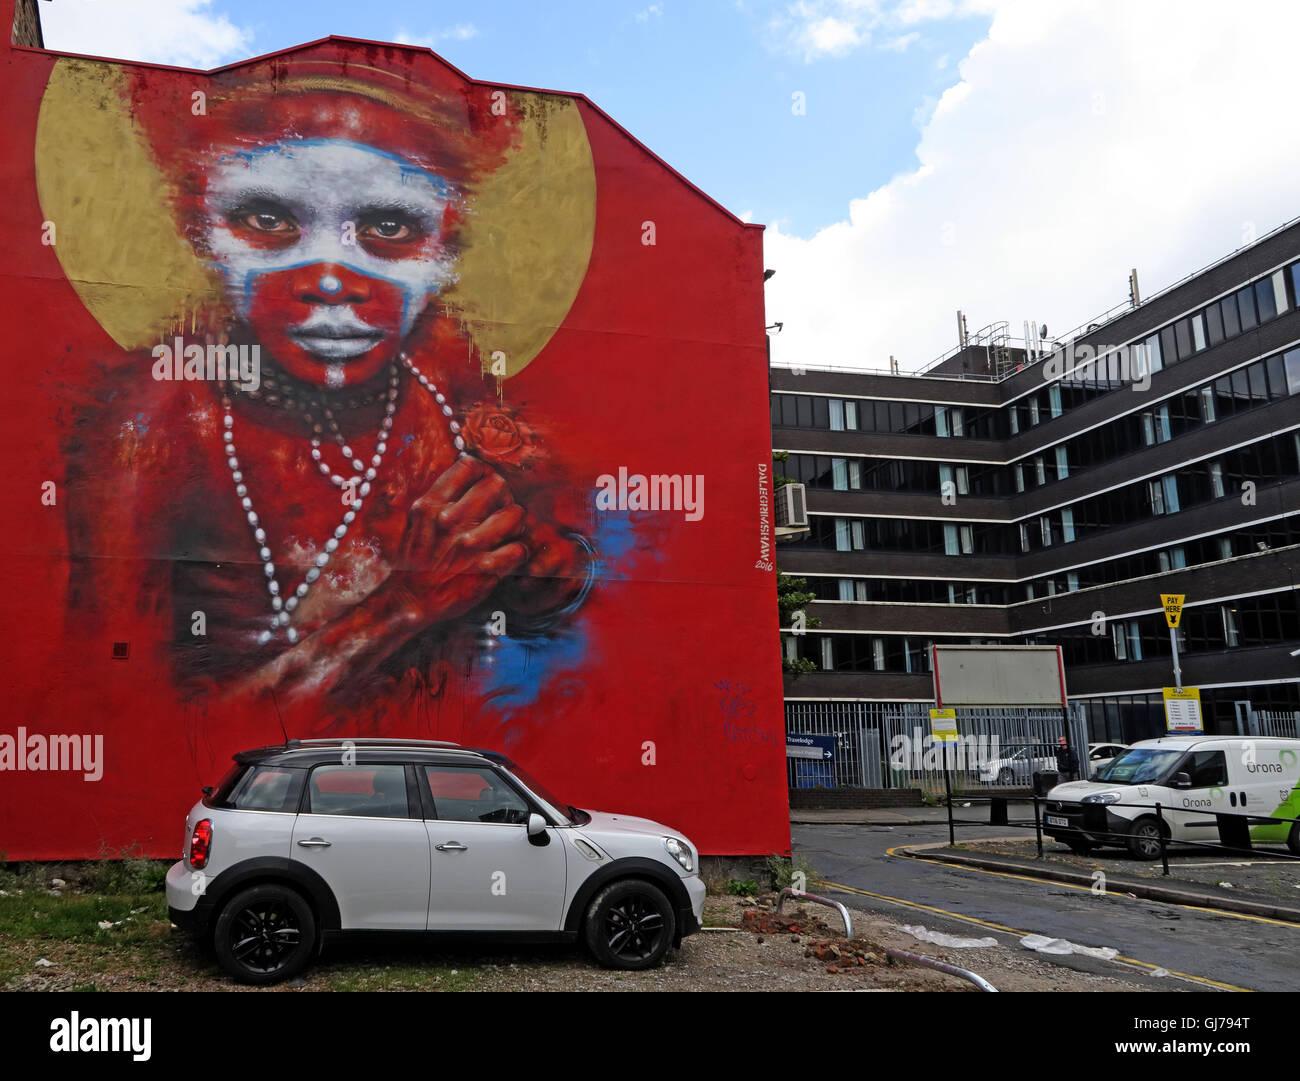 Enfant autochtone en parking, quart nord Art, NQ, Manchester, North West England, UK, M1 1JR Banque D'Images